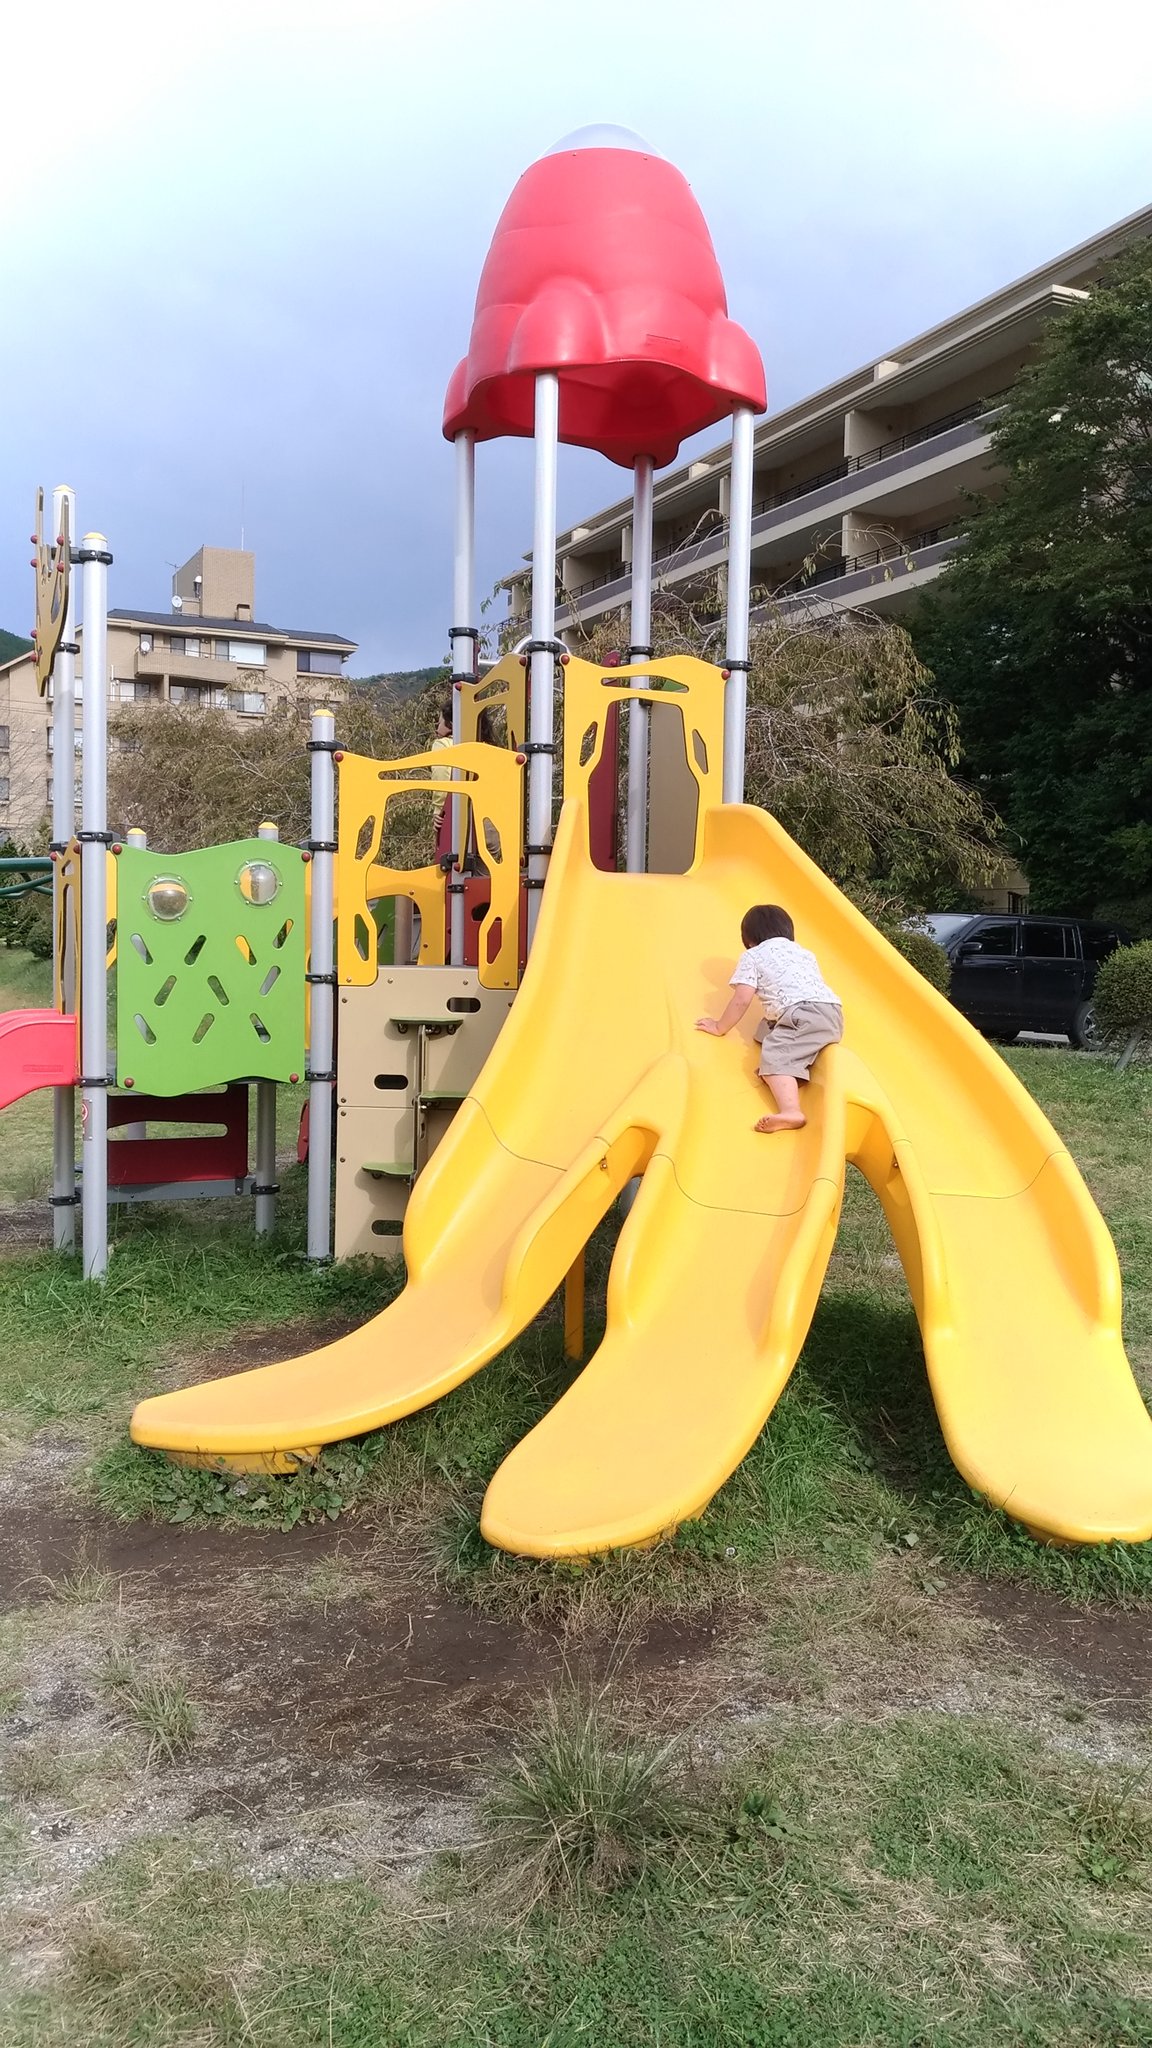 Hakonekot 箱根の仙石原にある公園 バナナすべり台 最初 怖くて滑れなかったけど 滑れるようになりました 17sep Baby 公園巡り すべり台のある公園 箱根 仙石原 Hakone 神奈川県 T Co Hqf3fwtcgq Twitter